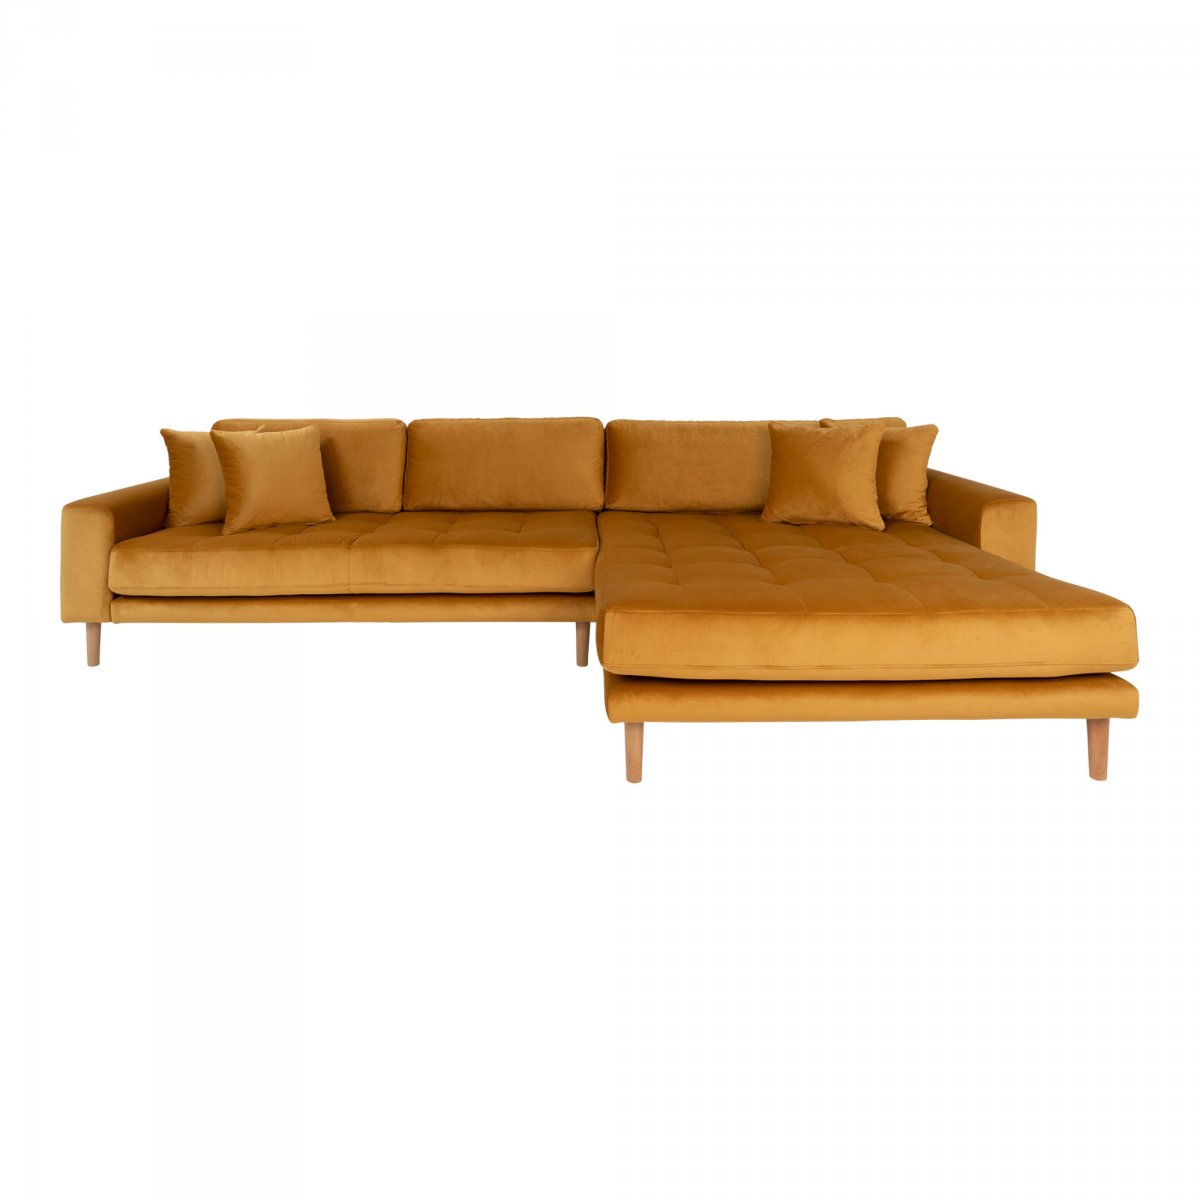 Canapé d'angle 4 places Tissu Design Confort Promotion